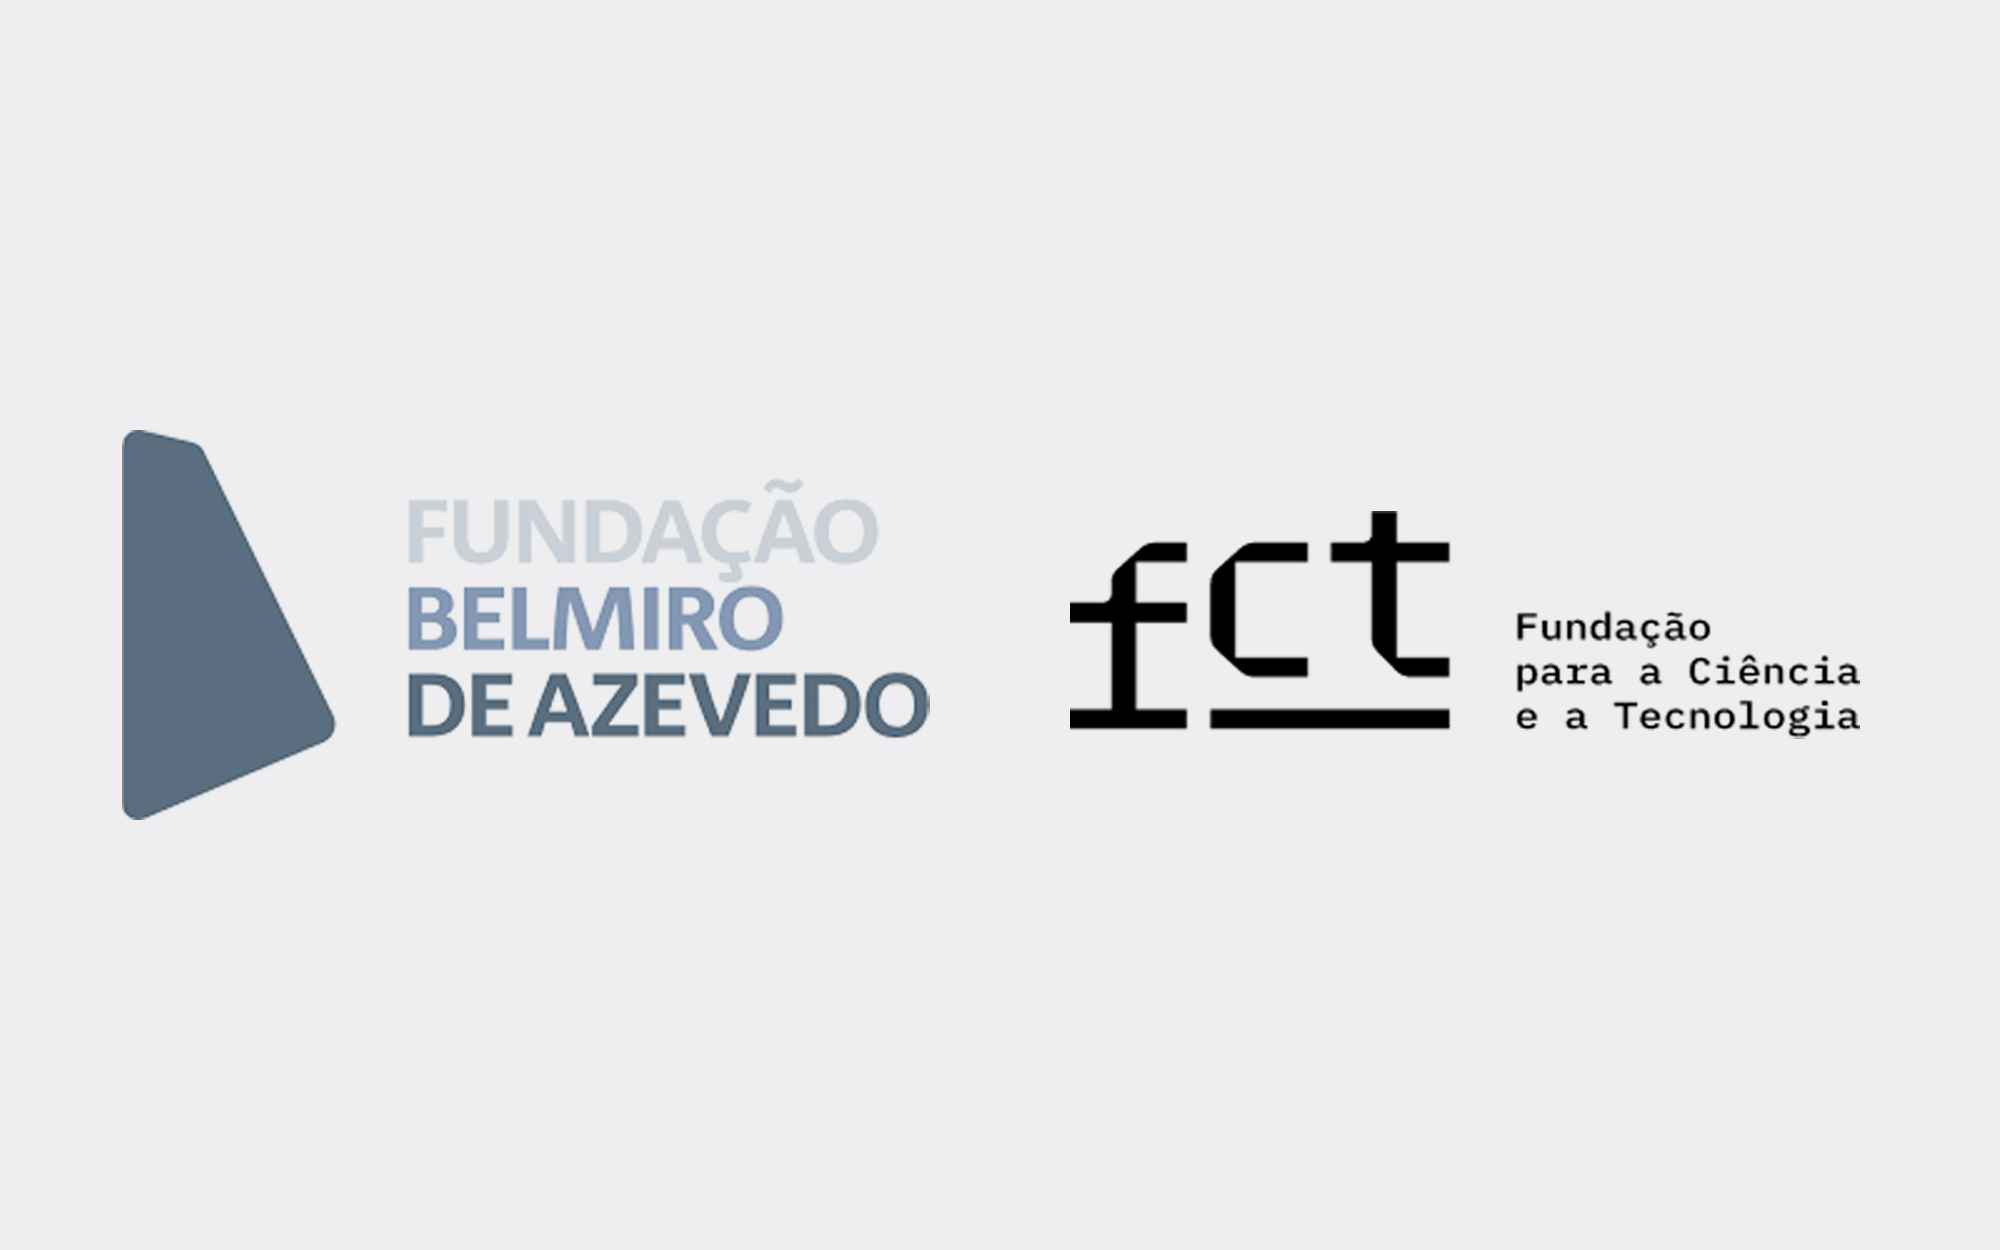 Fundação Belmiro de Azevedo e FCT